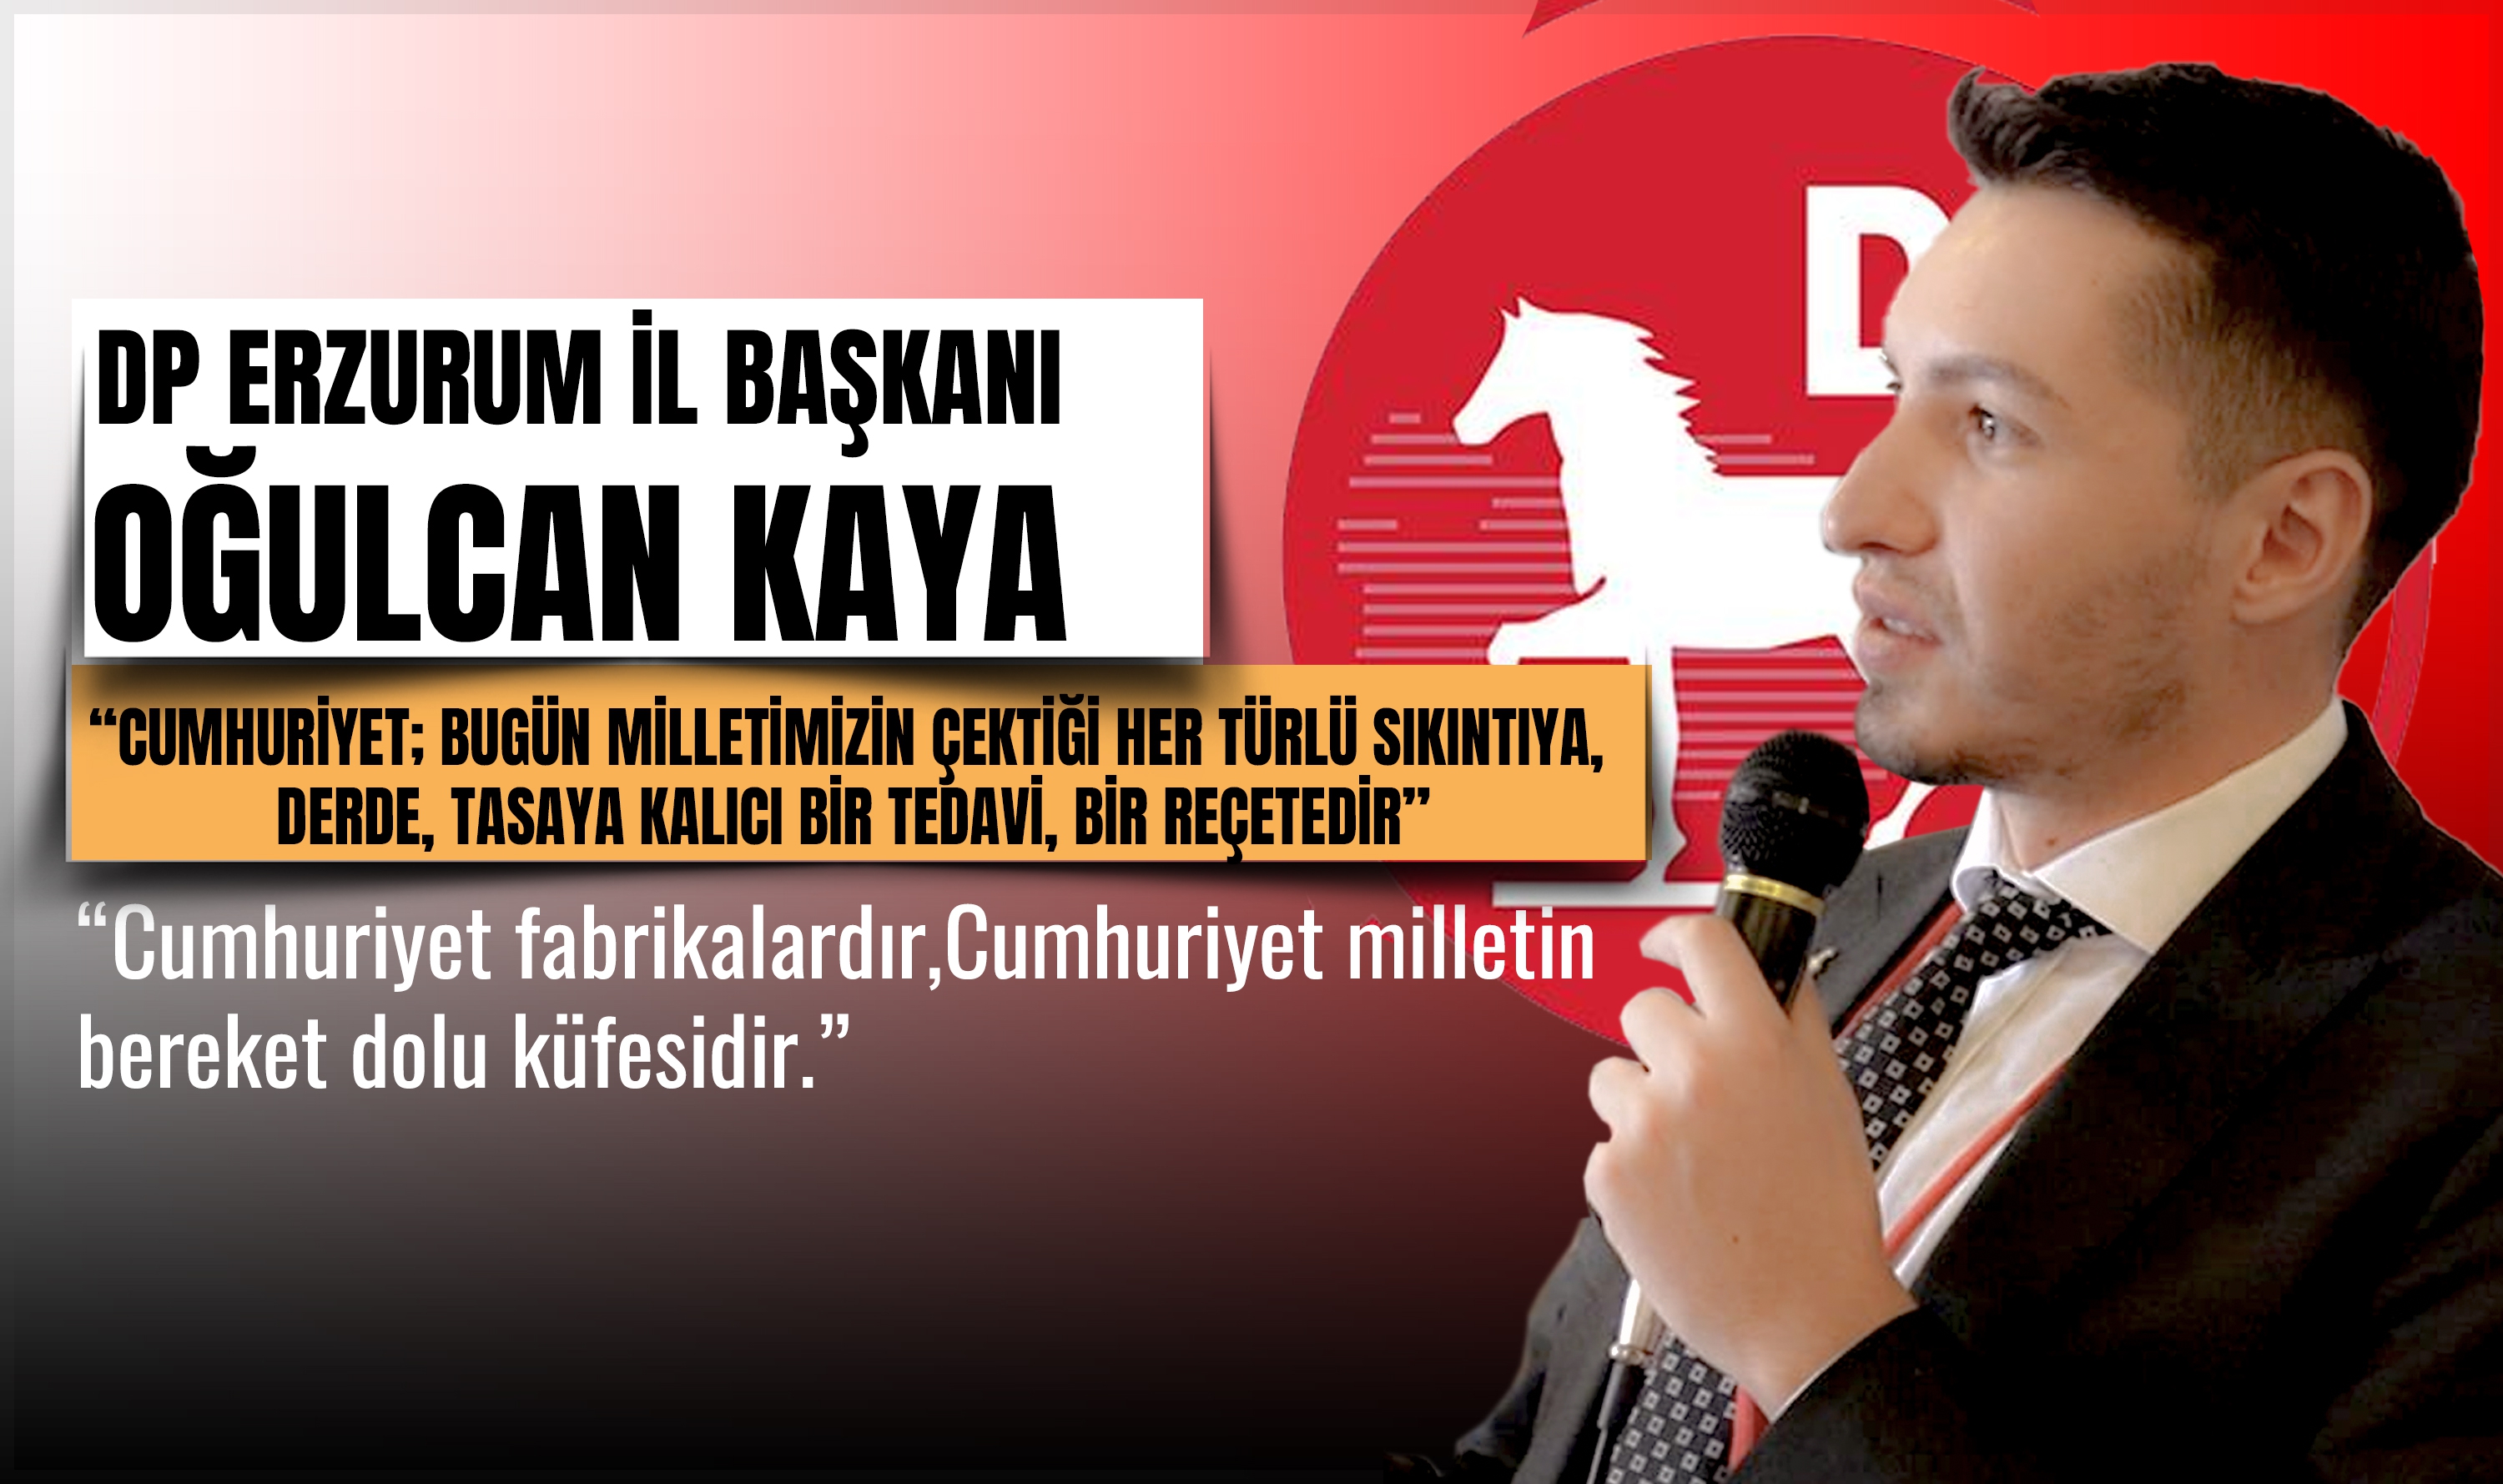 DP Erzurum İl Başkanı Oğulcan Kaya Cumhuriyetin 100.yılını kutladı.